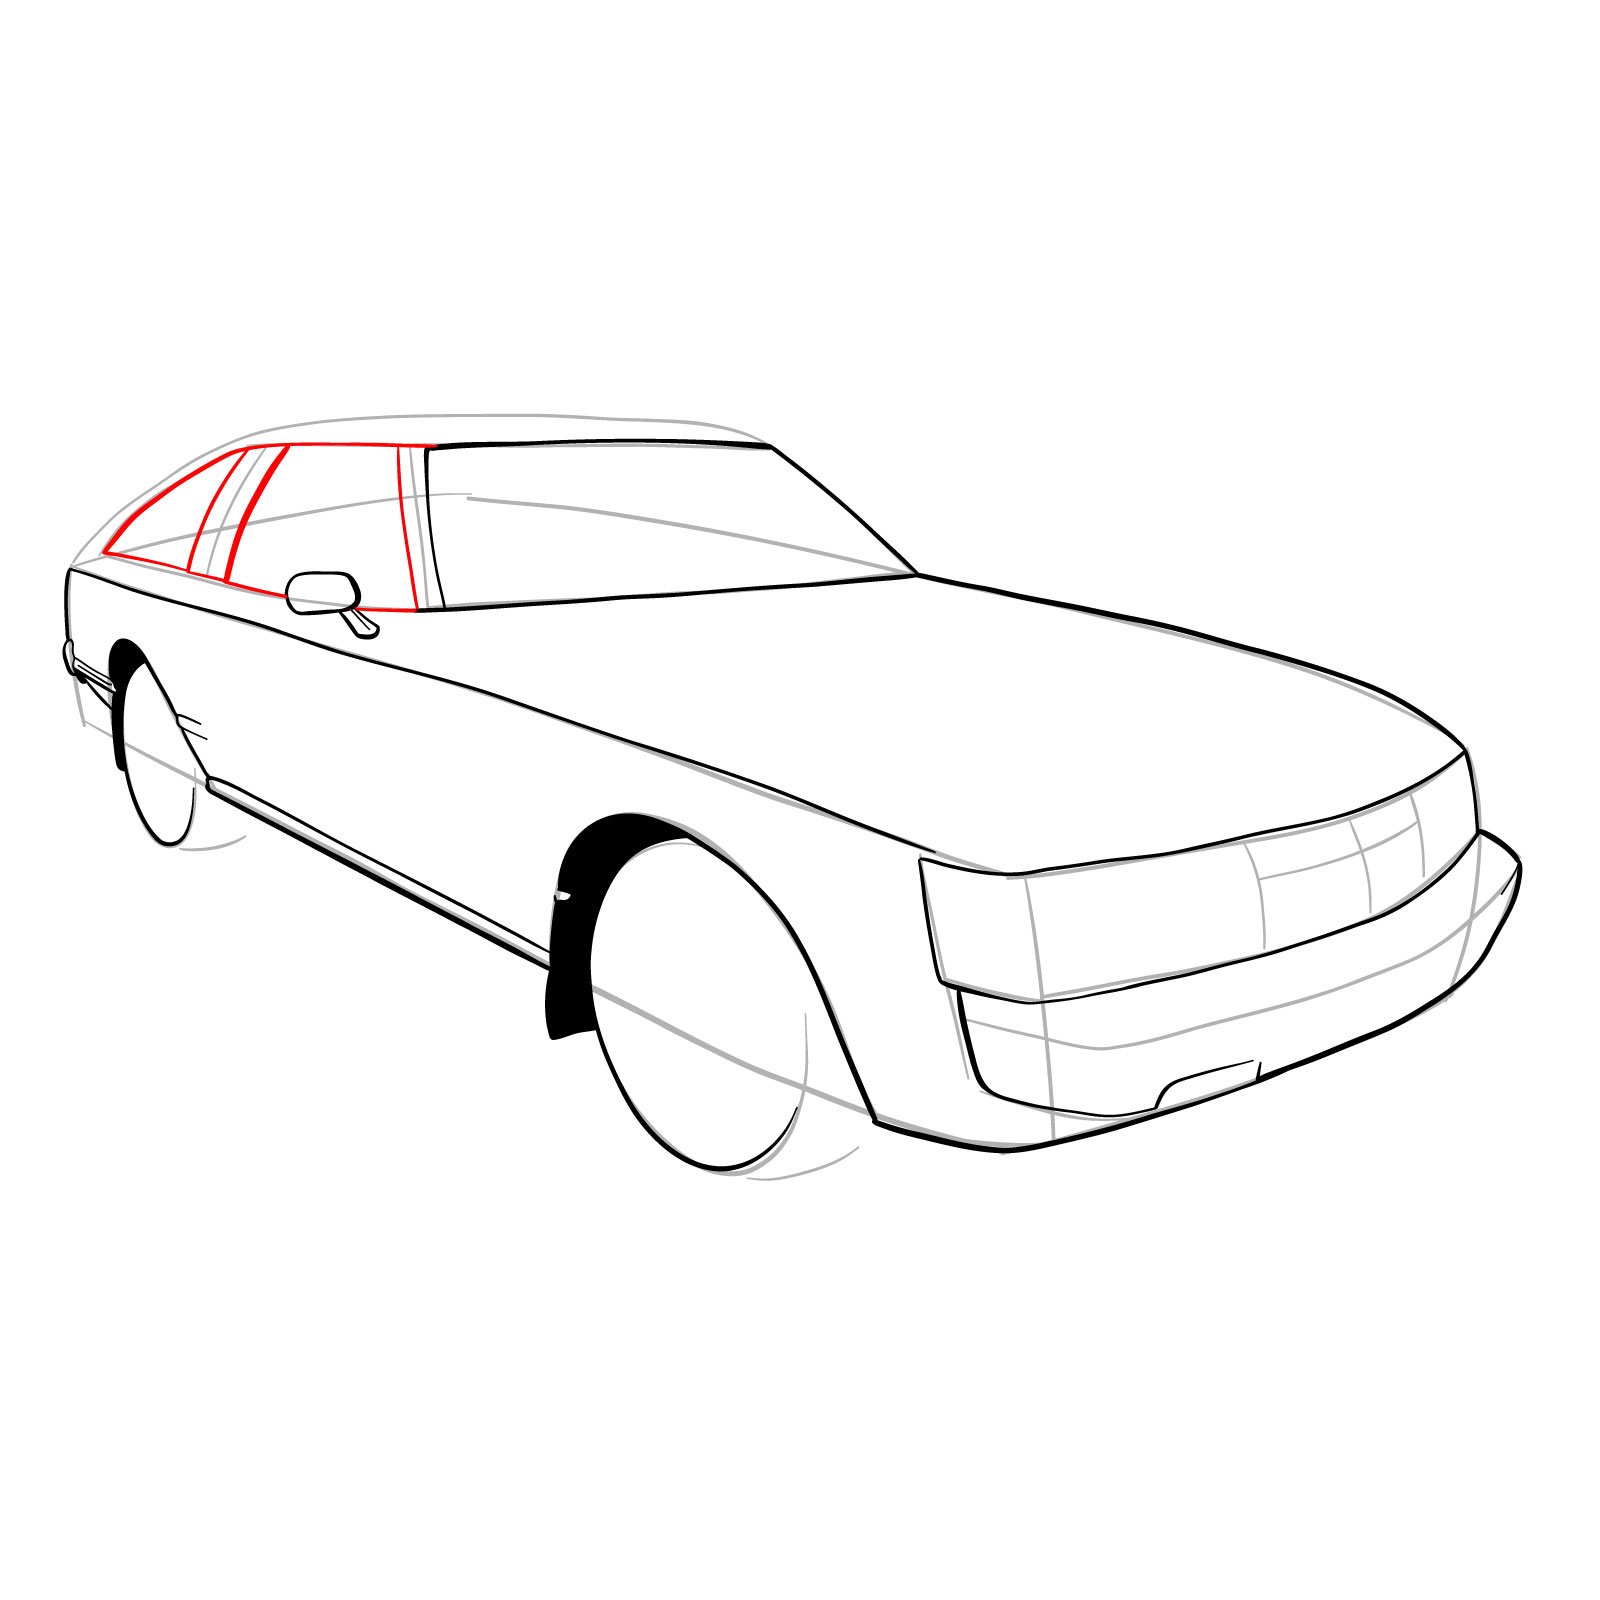 How to draw a 1979 Toyota Celica Supra Mk I Coupe - step 16